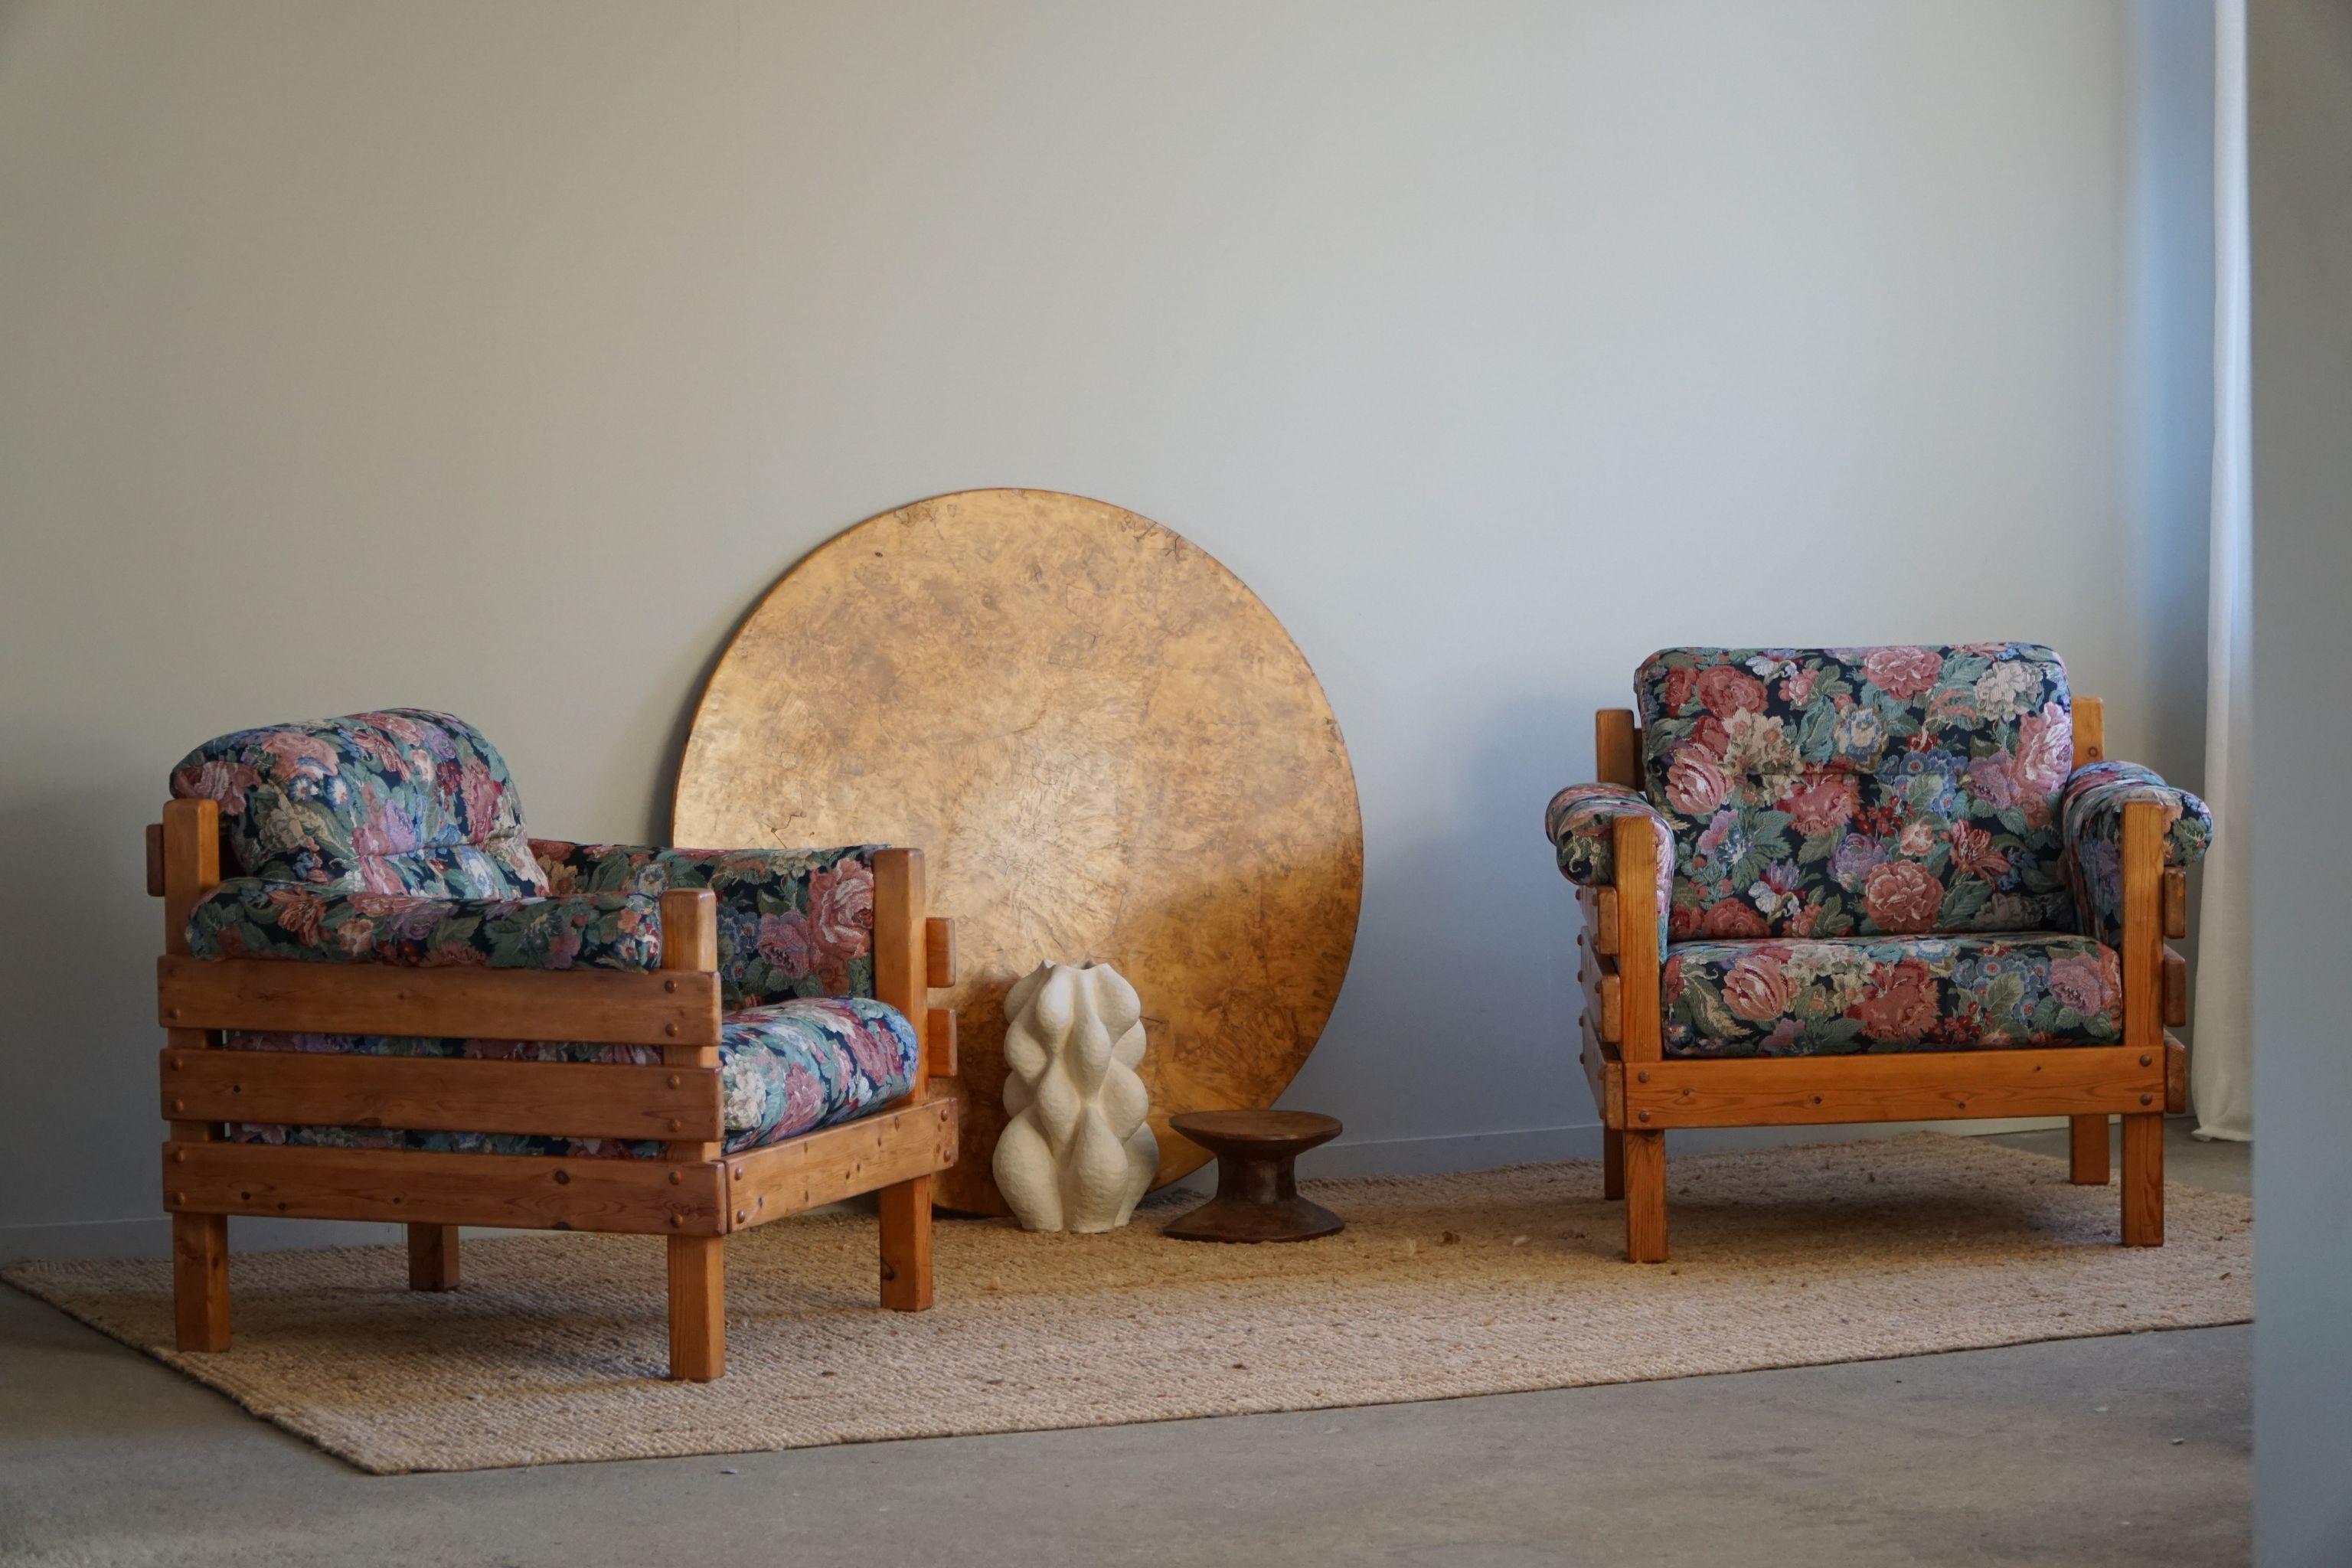 Une paire sculpturale de chaises longues en pin massif, tapissées d'un tissu vintage coloré. Attribué au designer suédois Sven Larsson. Fabriqué dans les années 1970.

Cette paire brutaliste s'harmonise avec de nombreux styles d'intérieur. Une